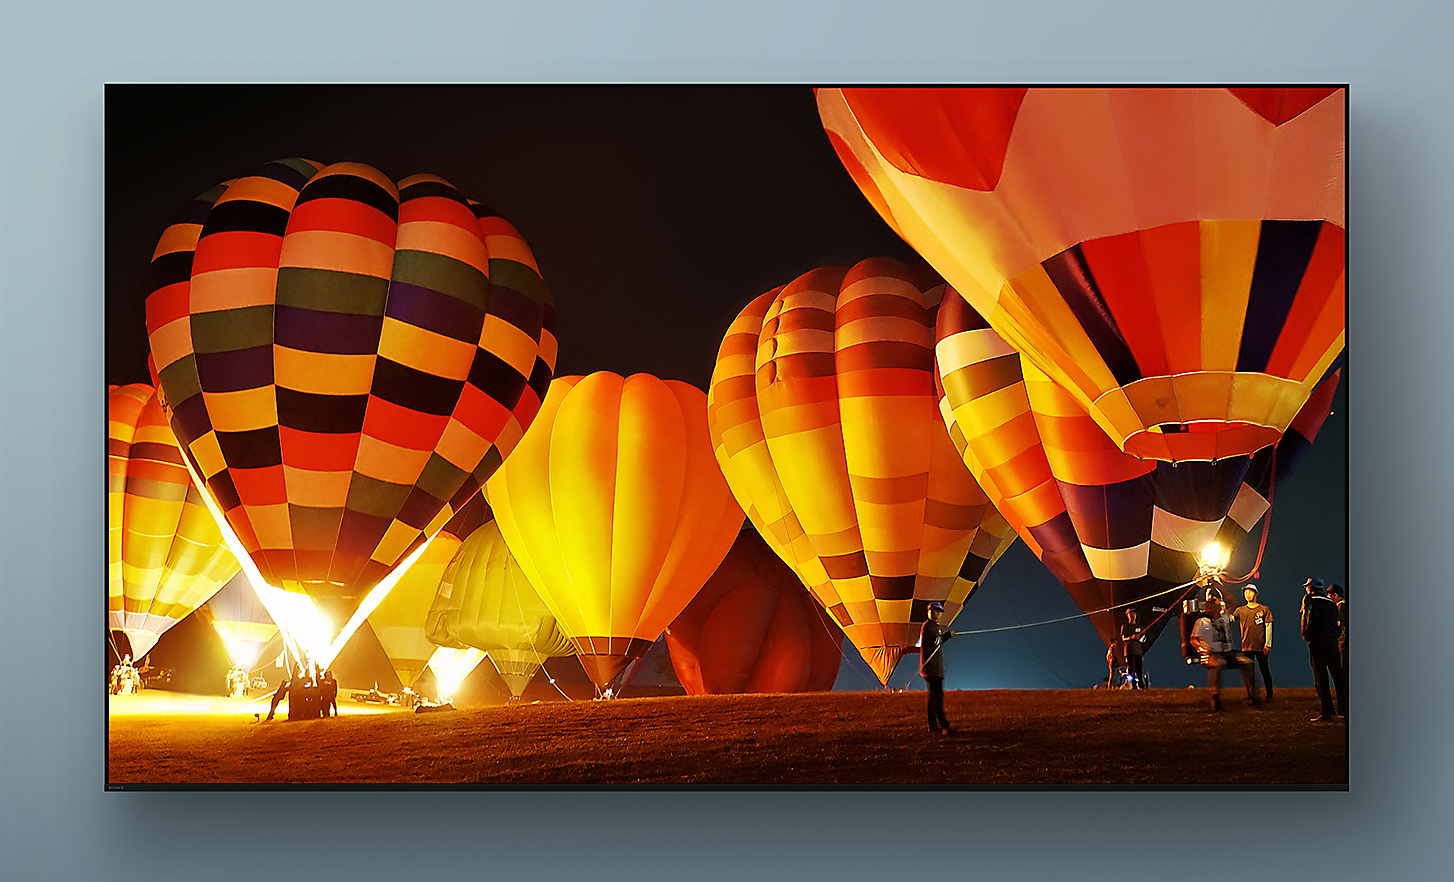 BRAVIA-TV, jonka ruudulla kuvakaappaus yöllä liikkeelle lähtevistä värikkäistä kuumailmapalloista